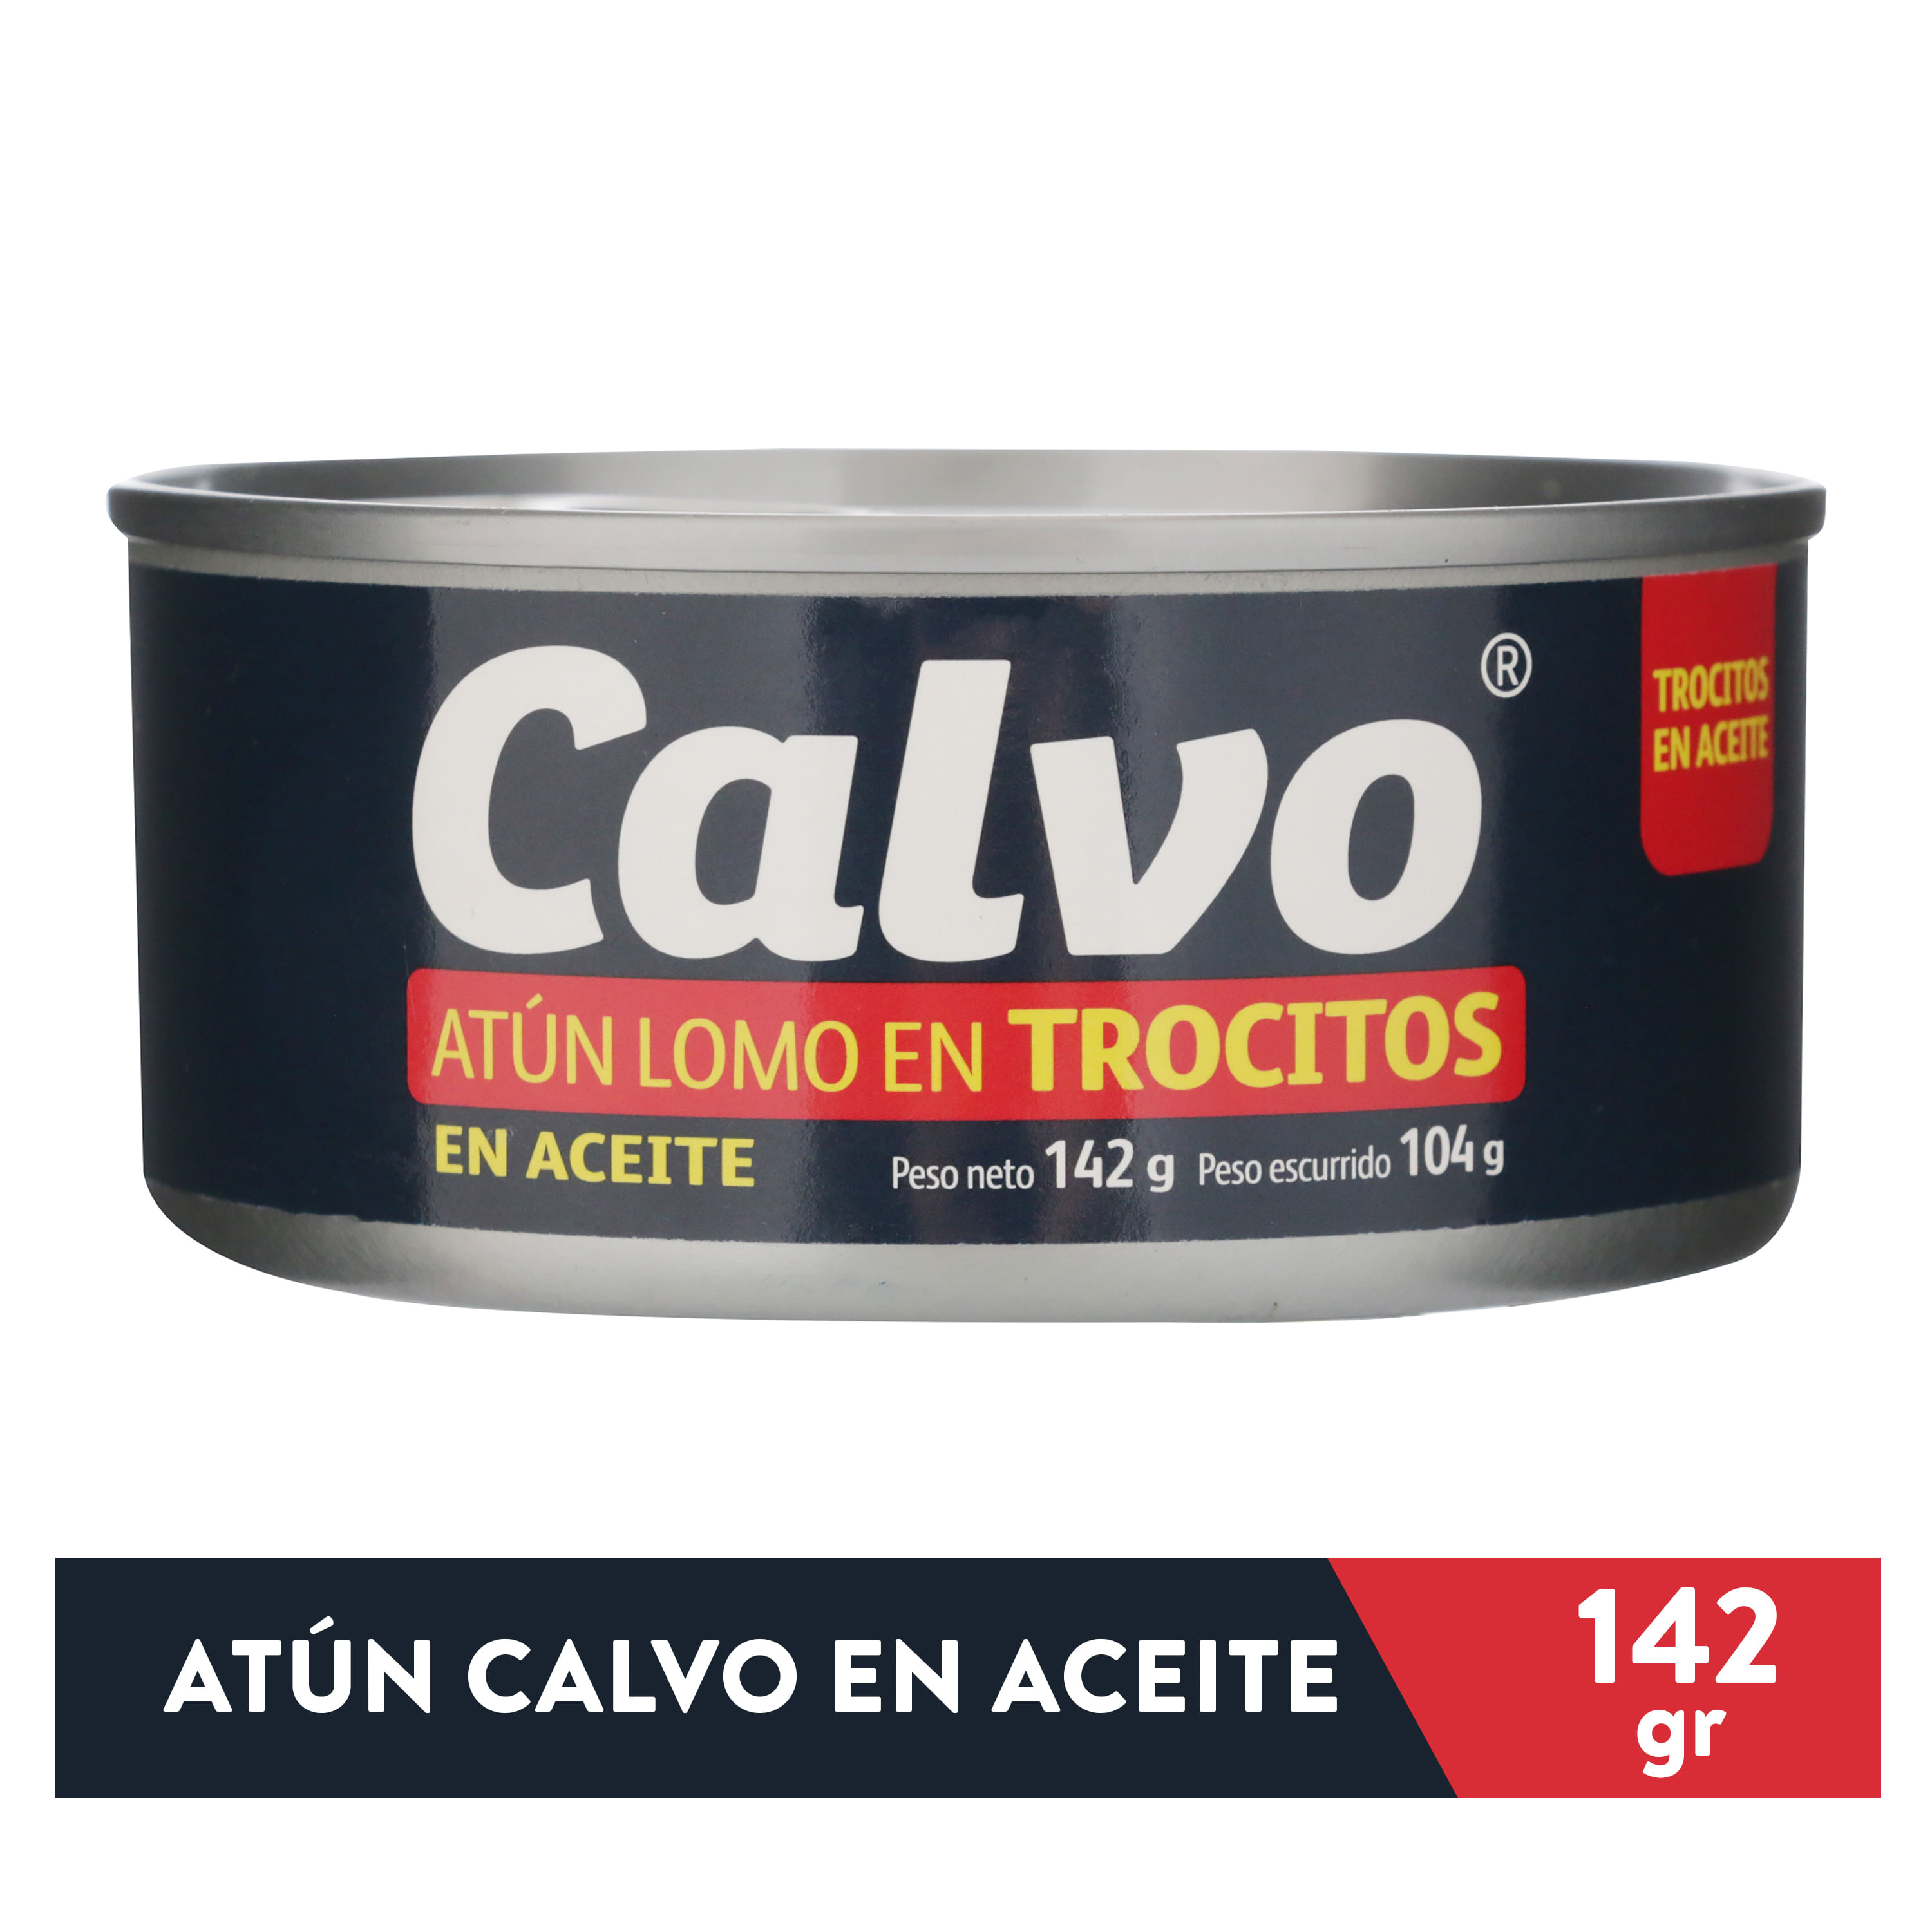 Atun-Calvo-Trocitos-En-Aceite-142gr-1-6537